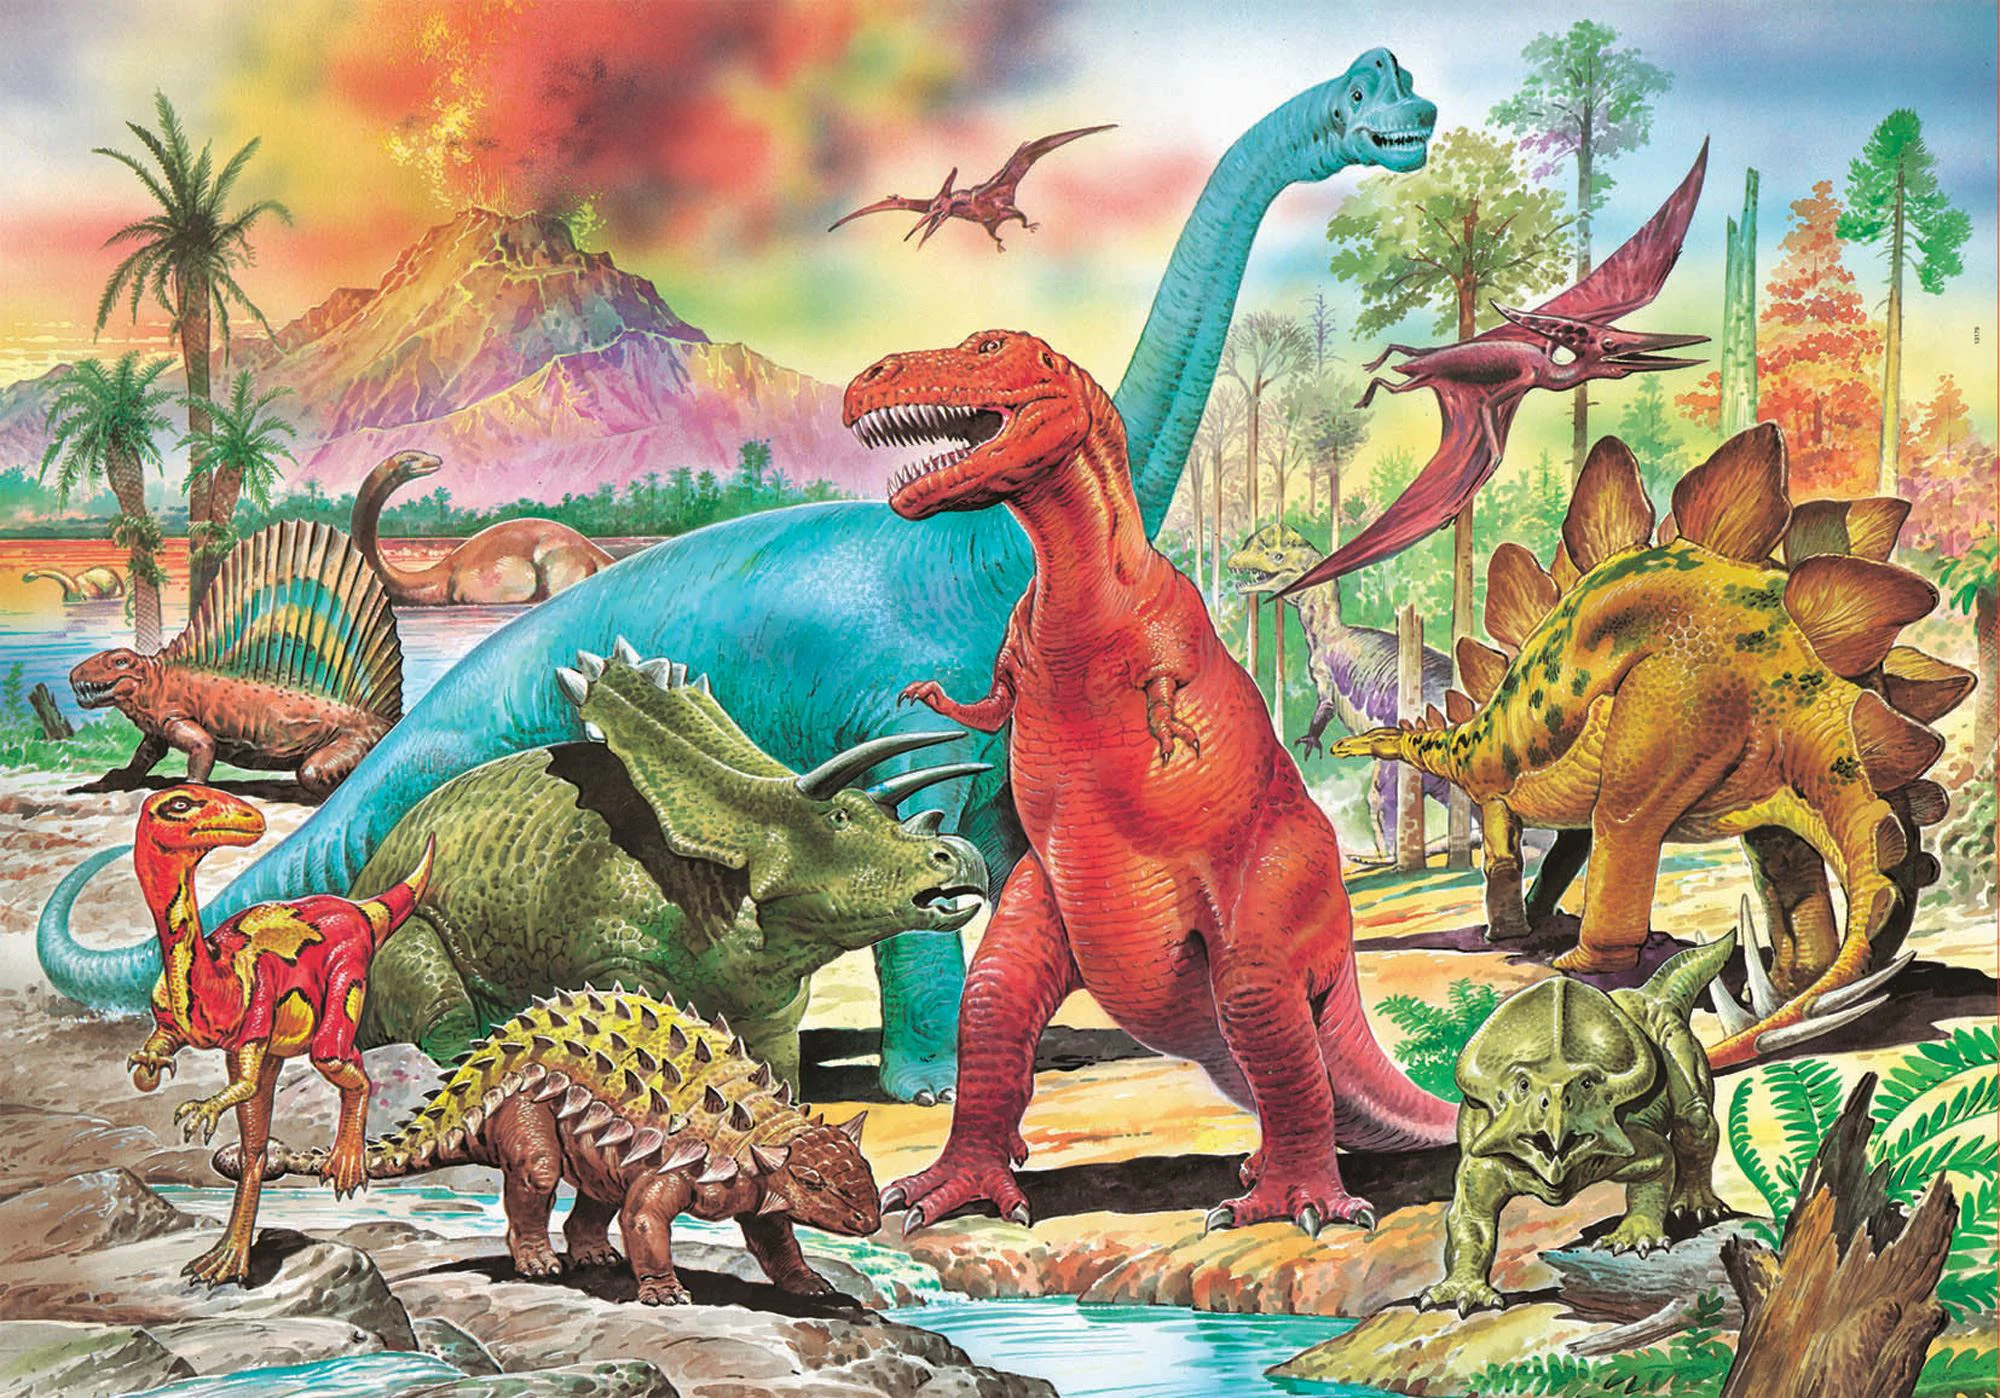 Puzzle Educa Dinozauri, 100 piese